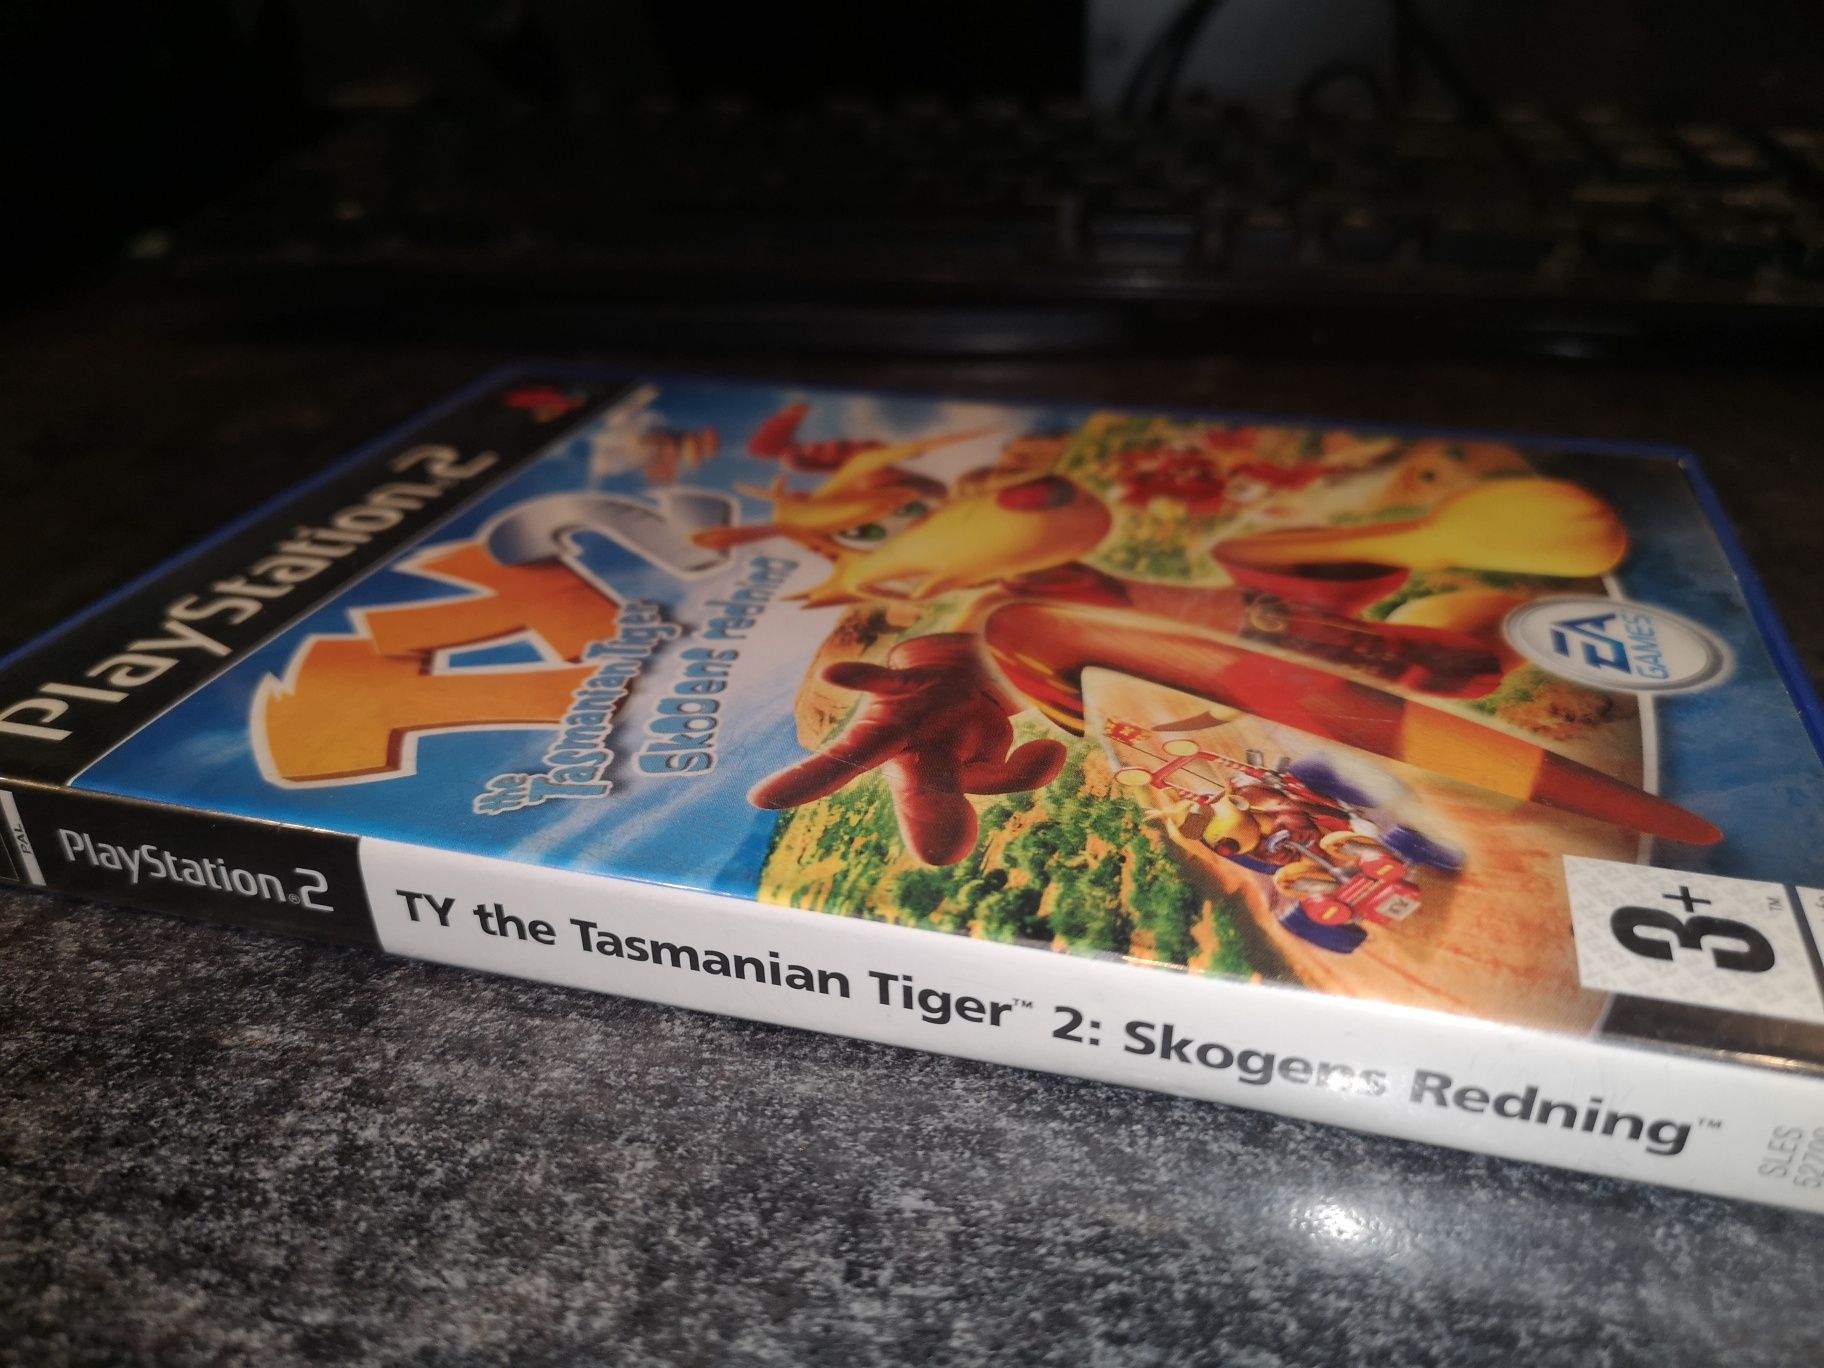 TY 2 Tasmanian Tiger PS2 gra ANG (stan bdb+) kioskzgrami sklep